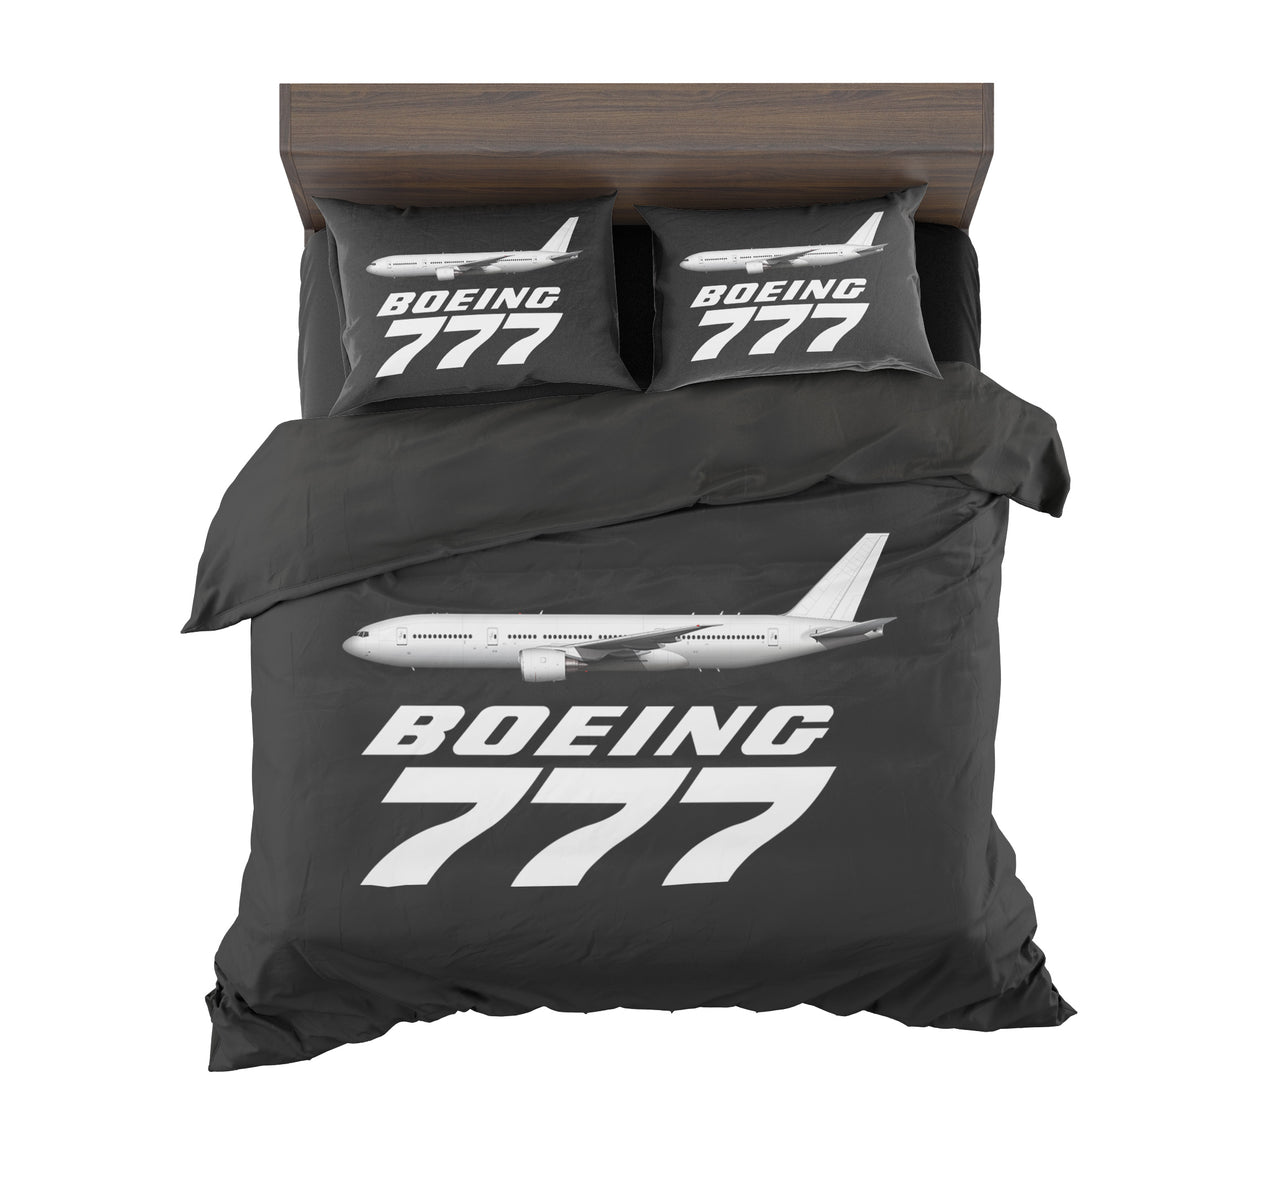 The Boeing 777 Designed Bedding Sets